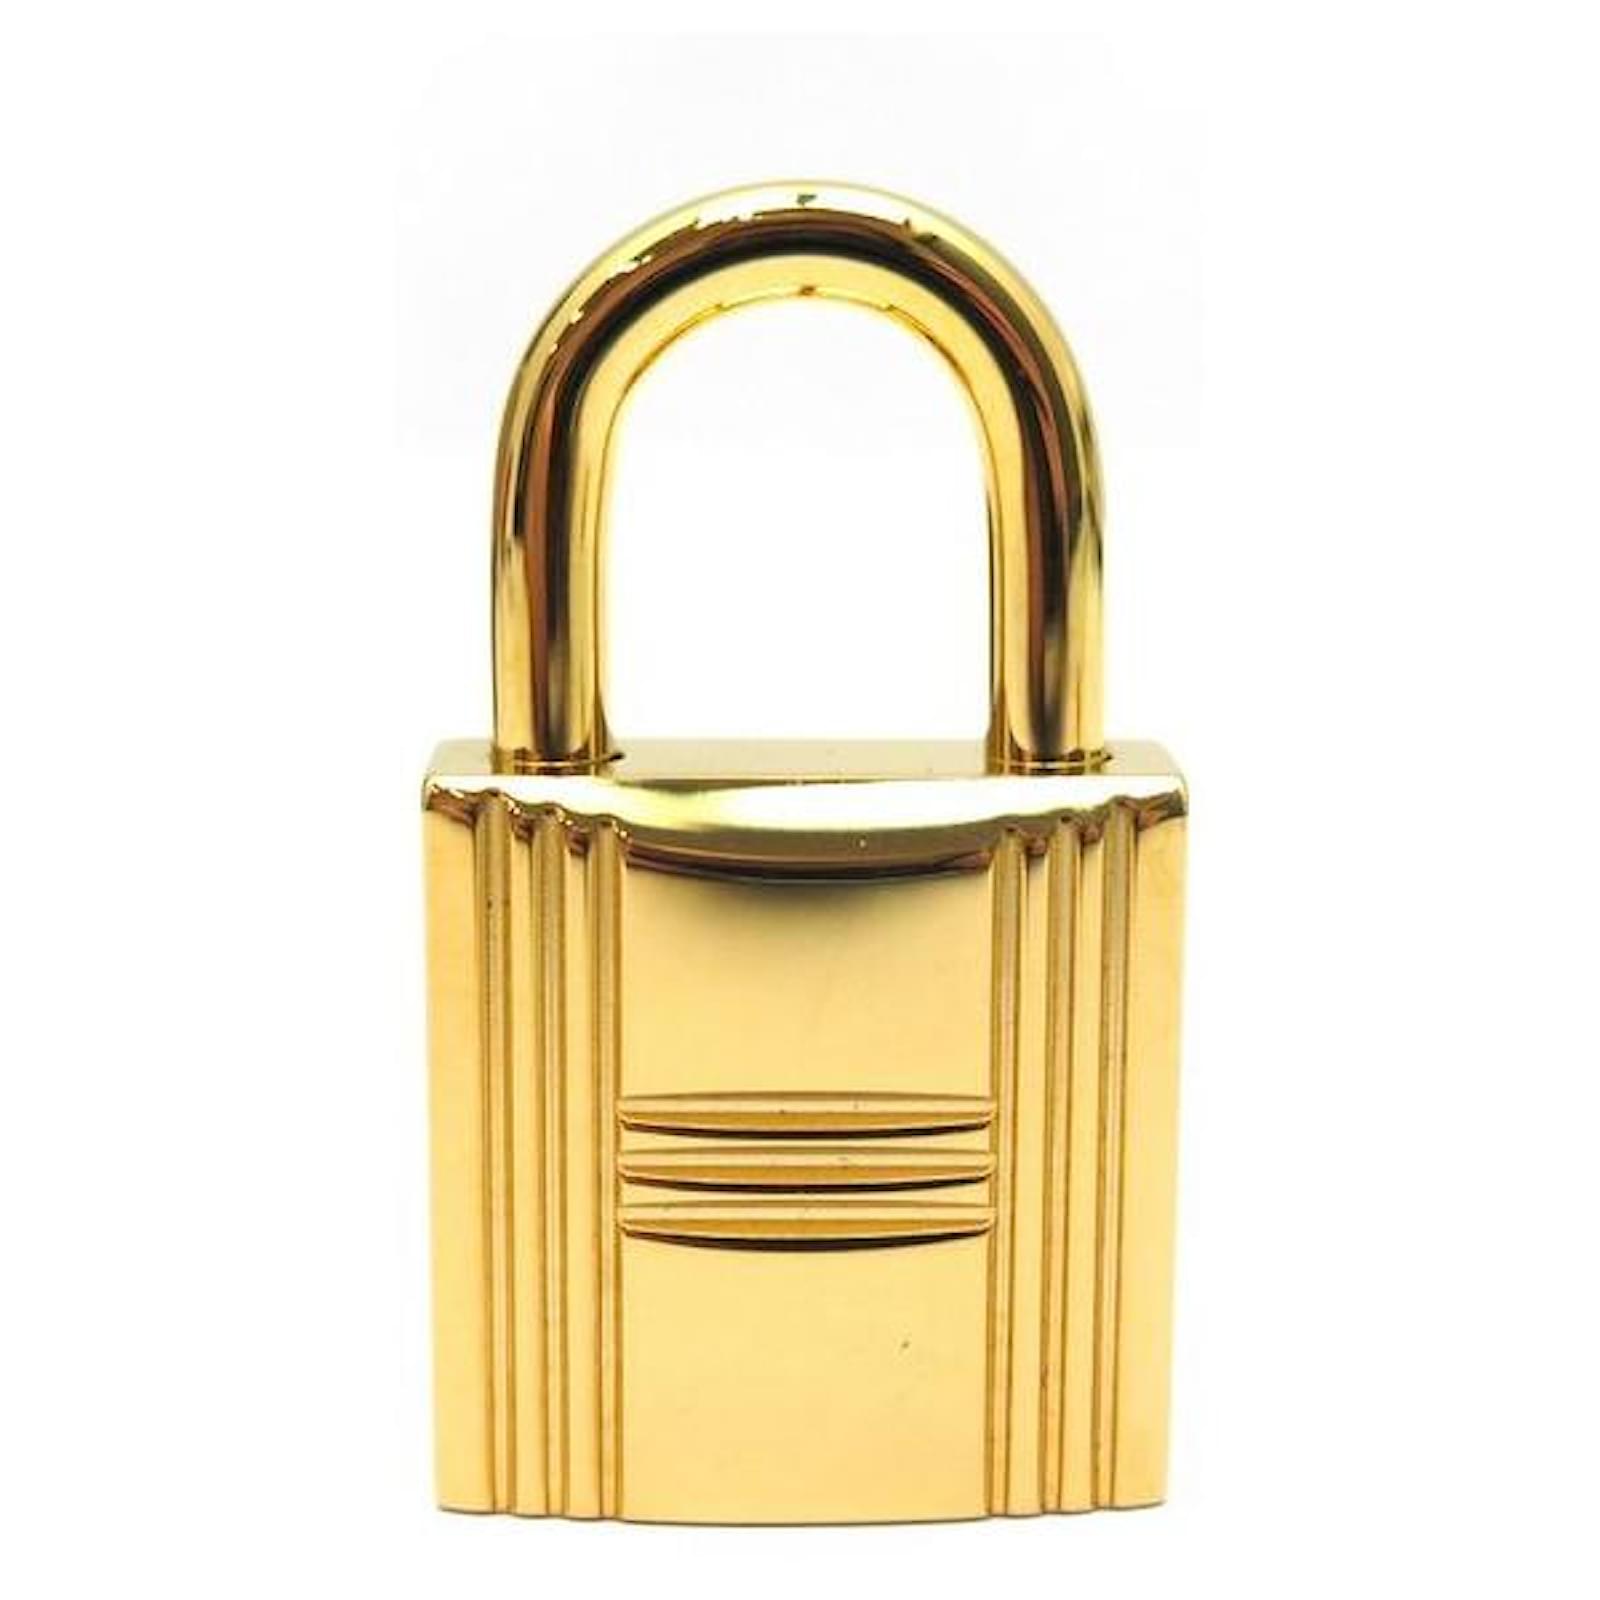 Hermès golden padlock for Birkin Kelly or Bolide bag